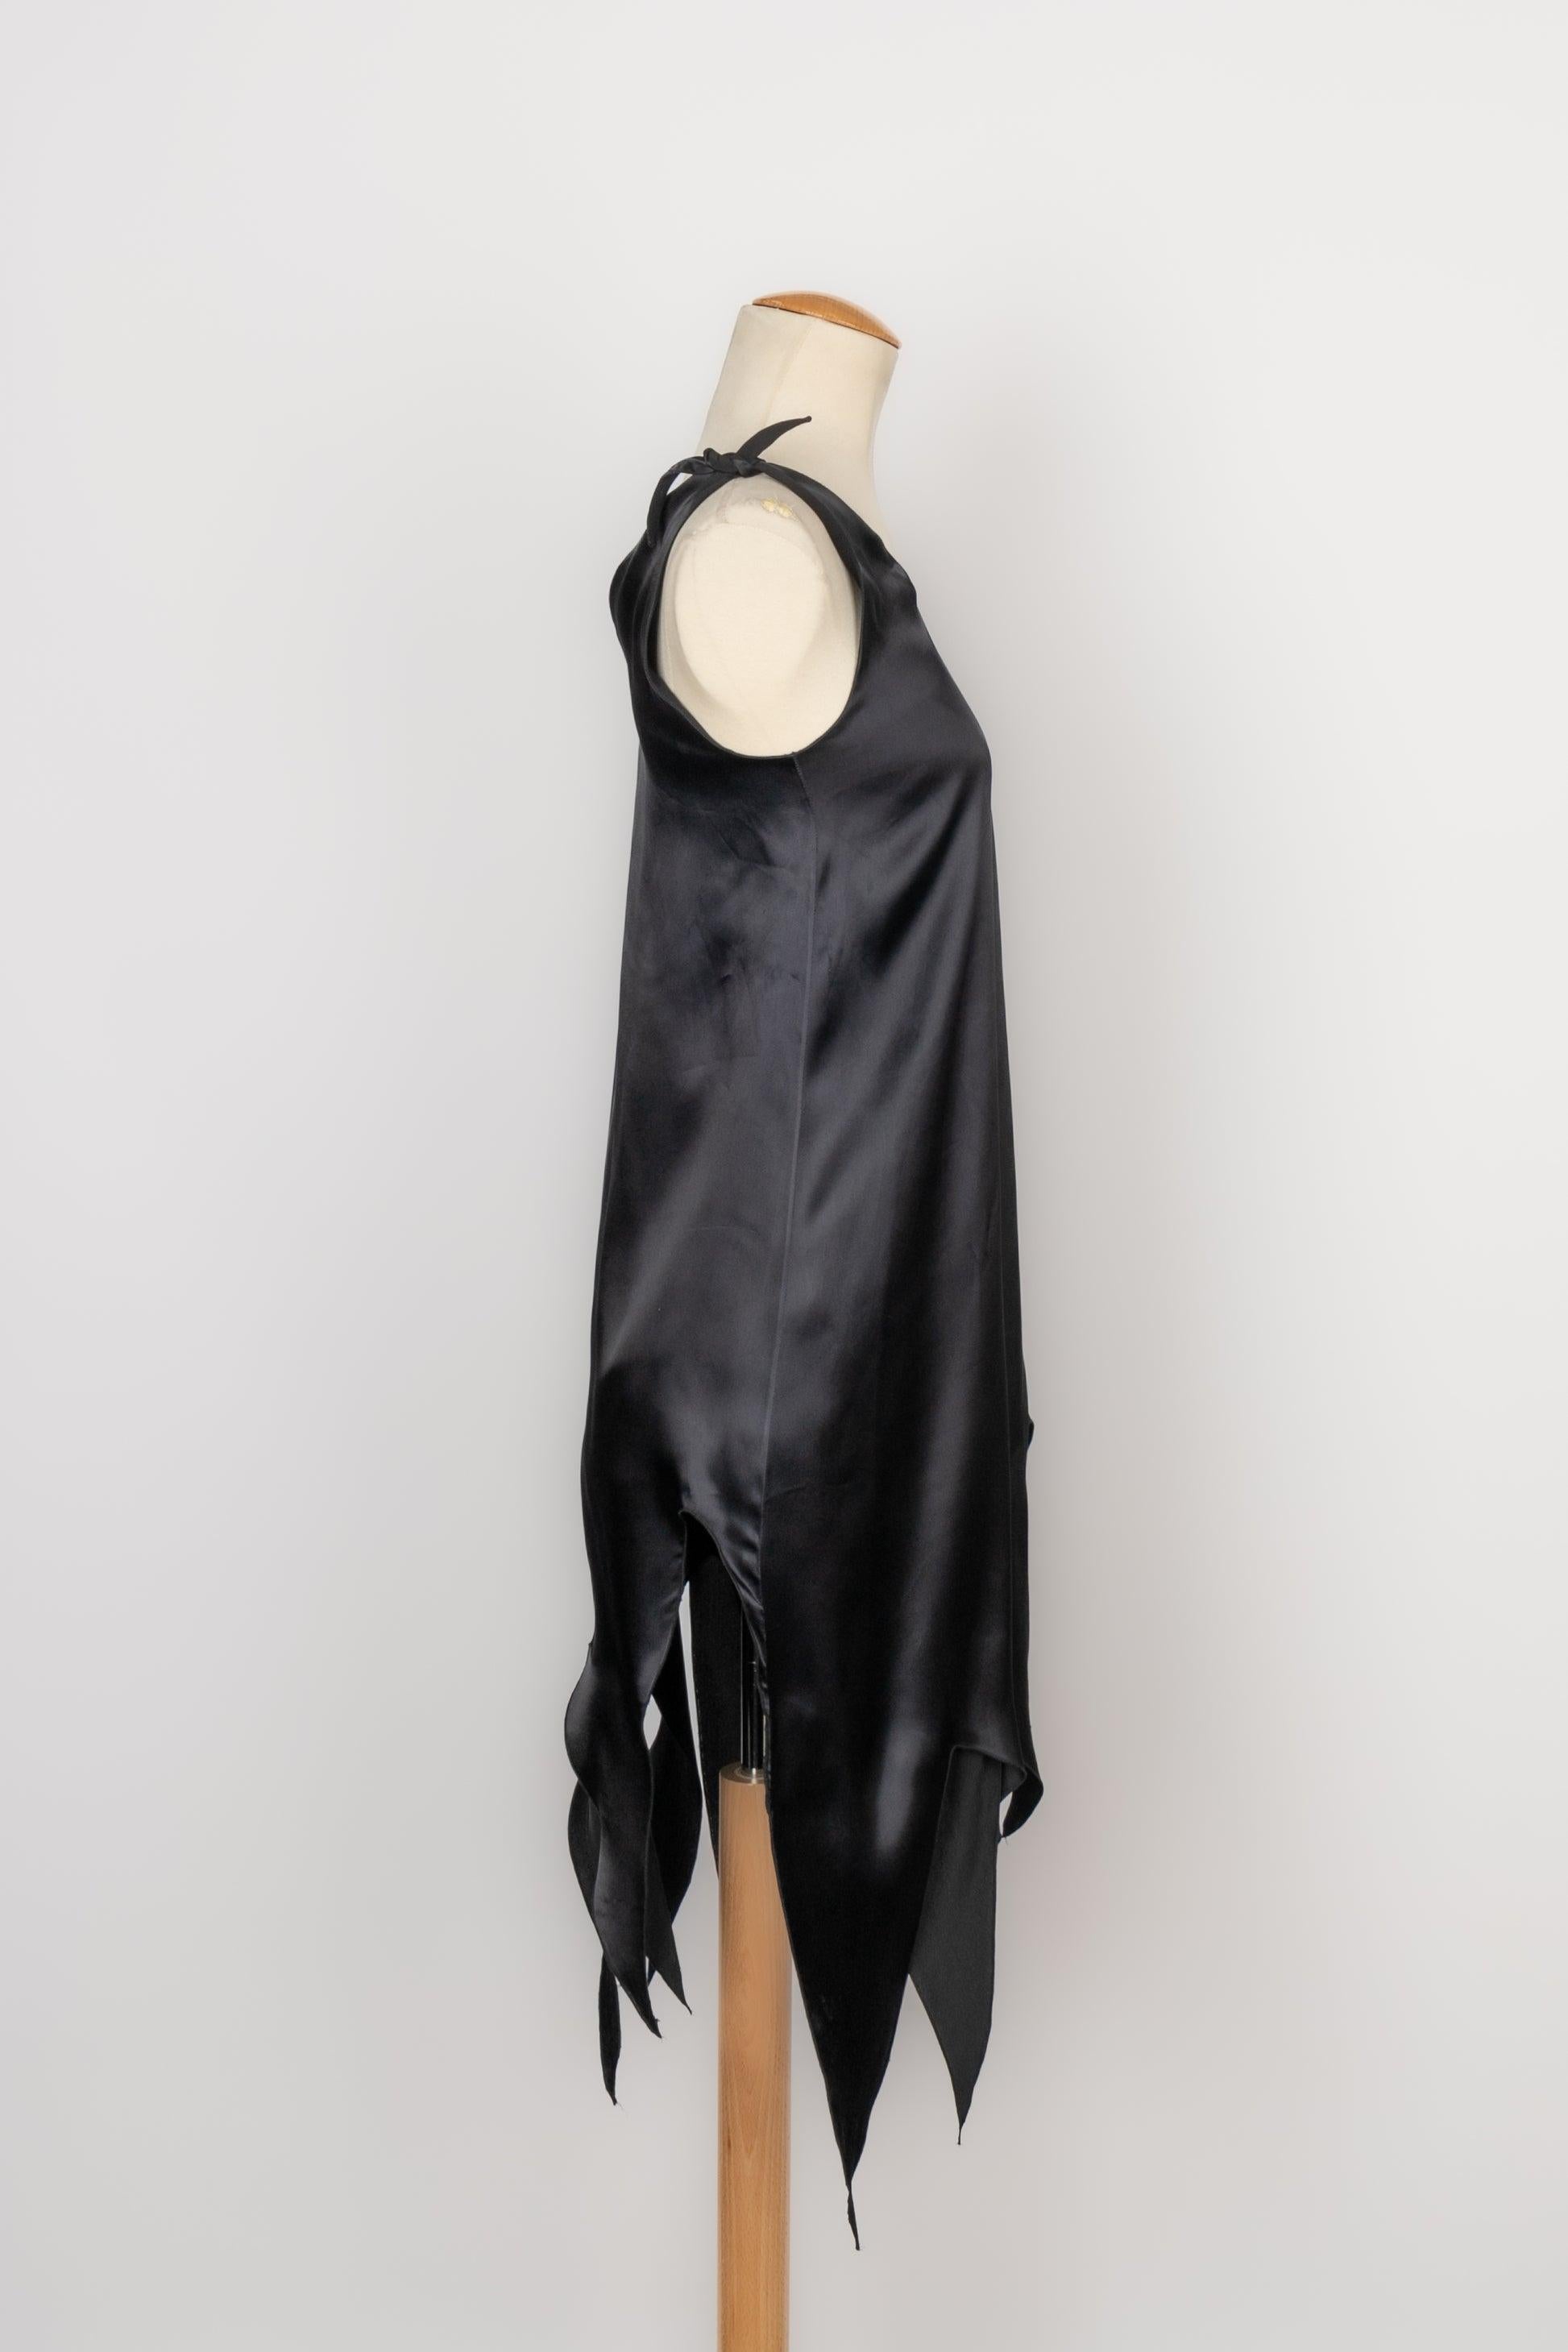 Givenchy - Robe asymétrique en satin noir. Aucune taille n'est indiquée, il convient à un 36FR/38FR. Modèle de défilé.

Informations complémentaires :
Condit : Très bon état.
Dimensions : Poitrine : 40 cm - Longueur : 88 cm à 117 cm

Référence du